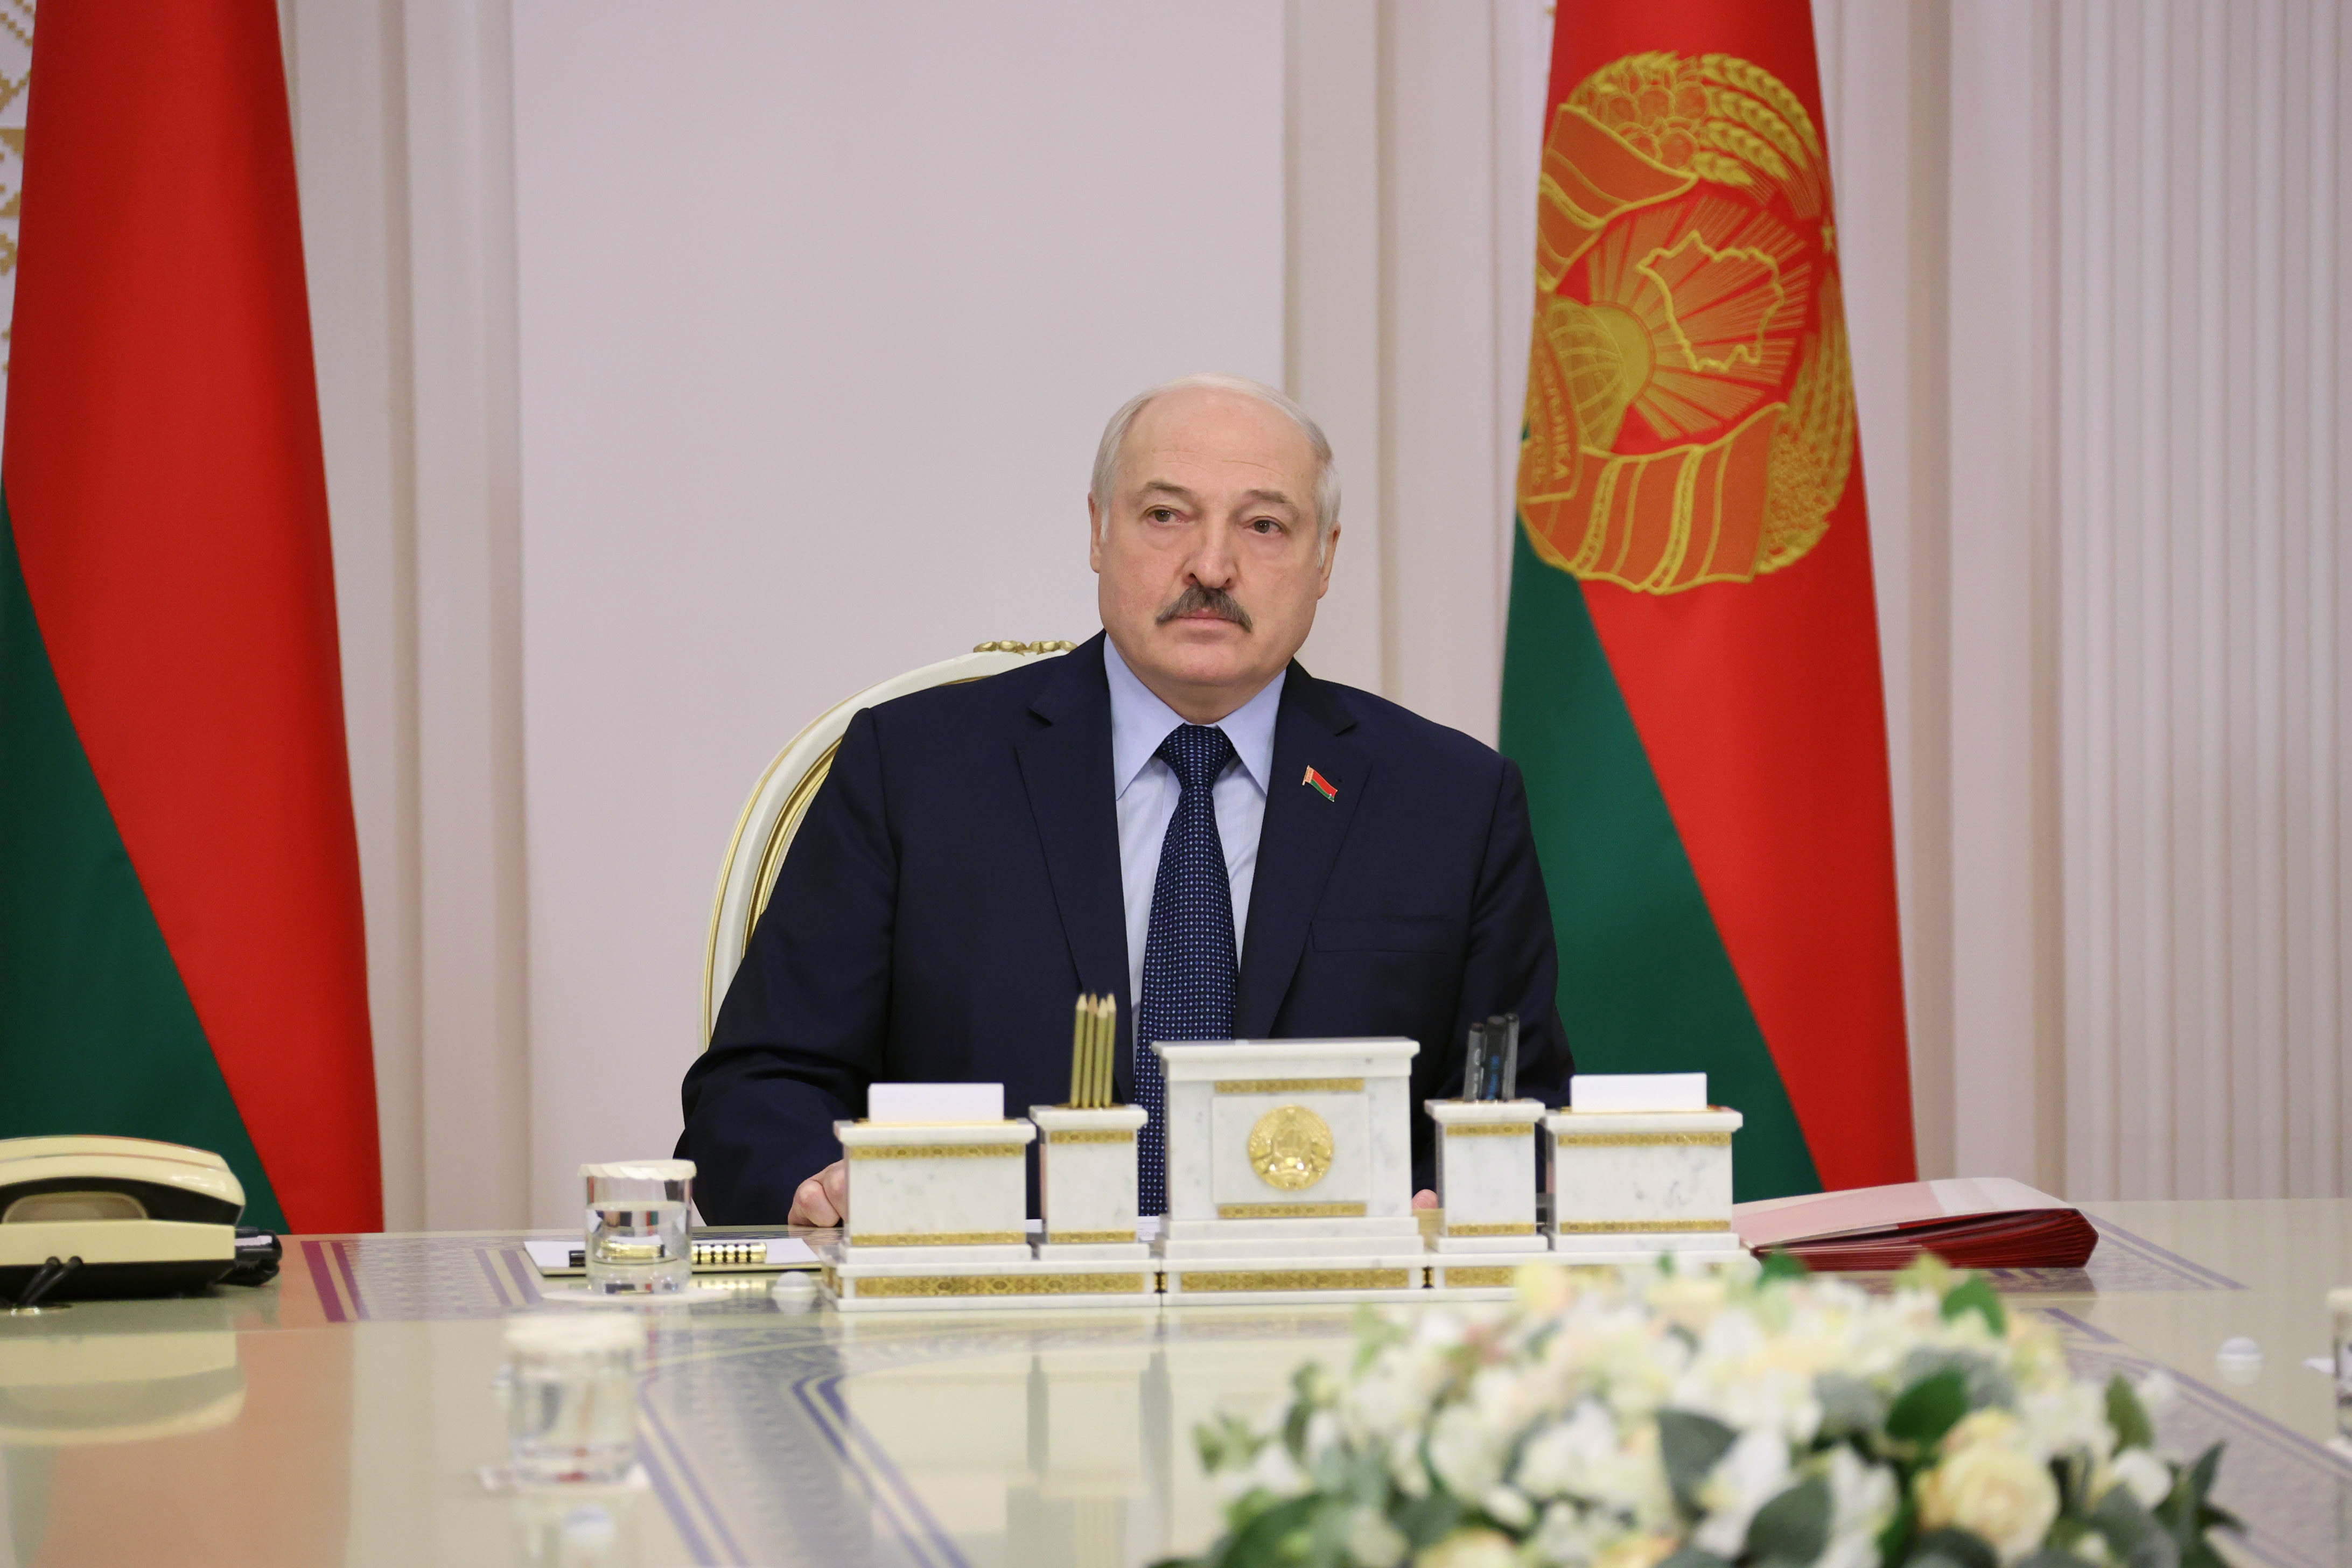 Александр Лукашенко: народ должен знать пути развития и планы государственной власти по их реализации 